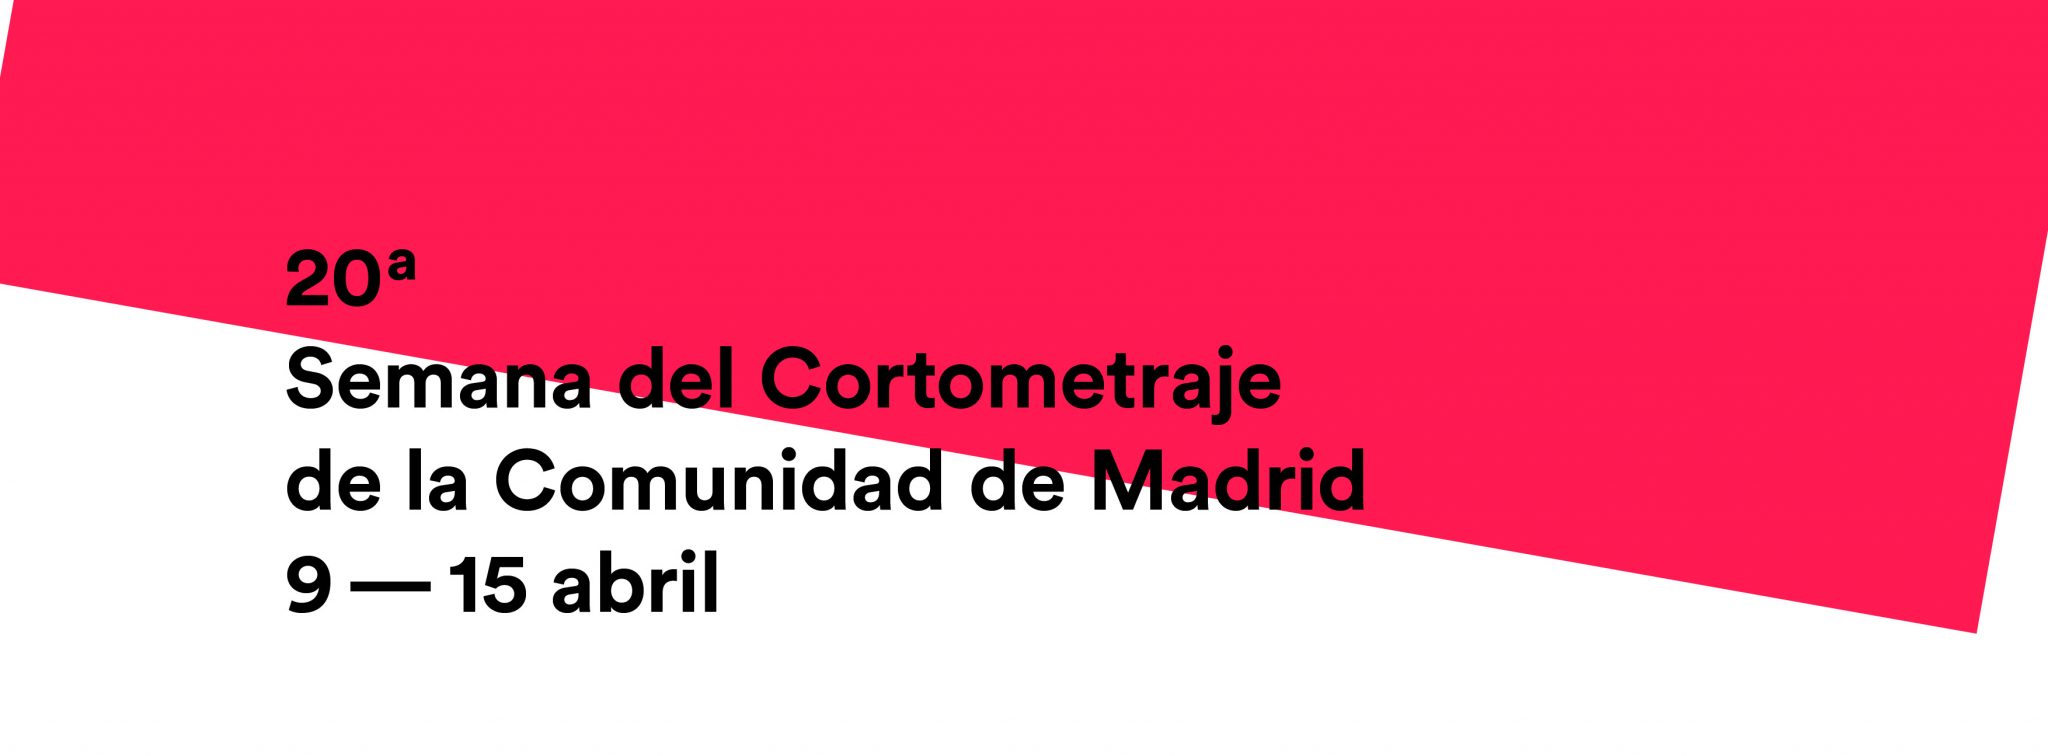 Presentación de la 20ª Semana del Cortometraje de la Comunidad de Madrid